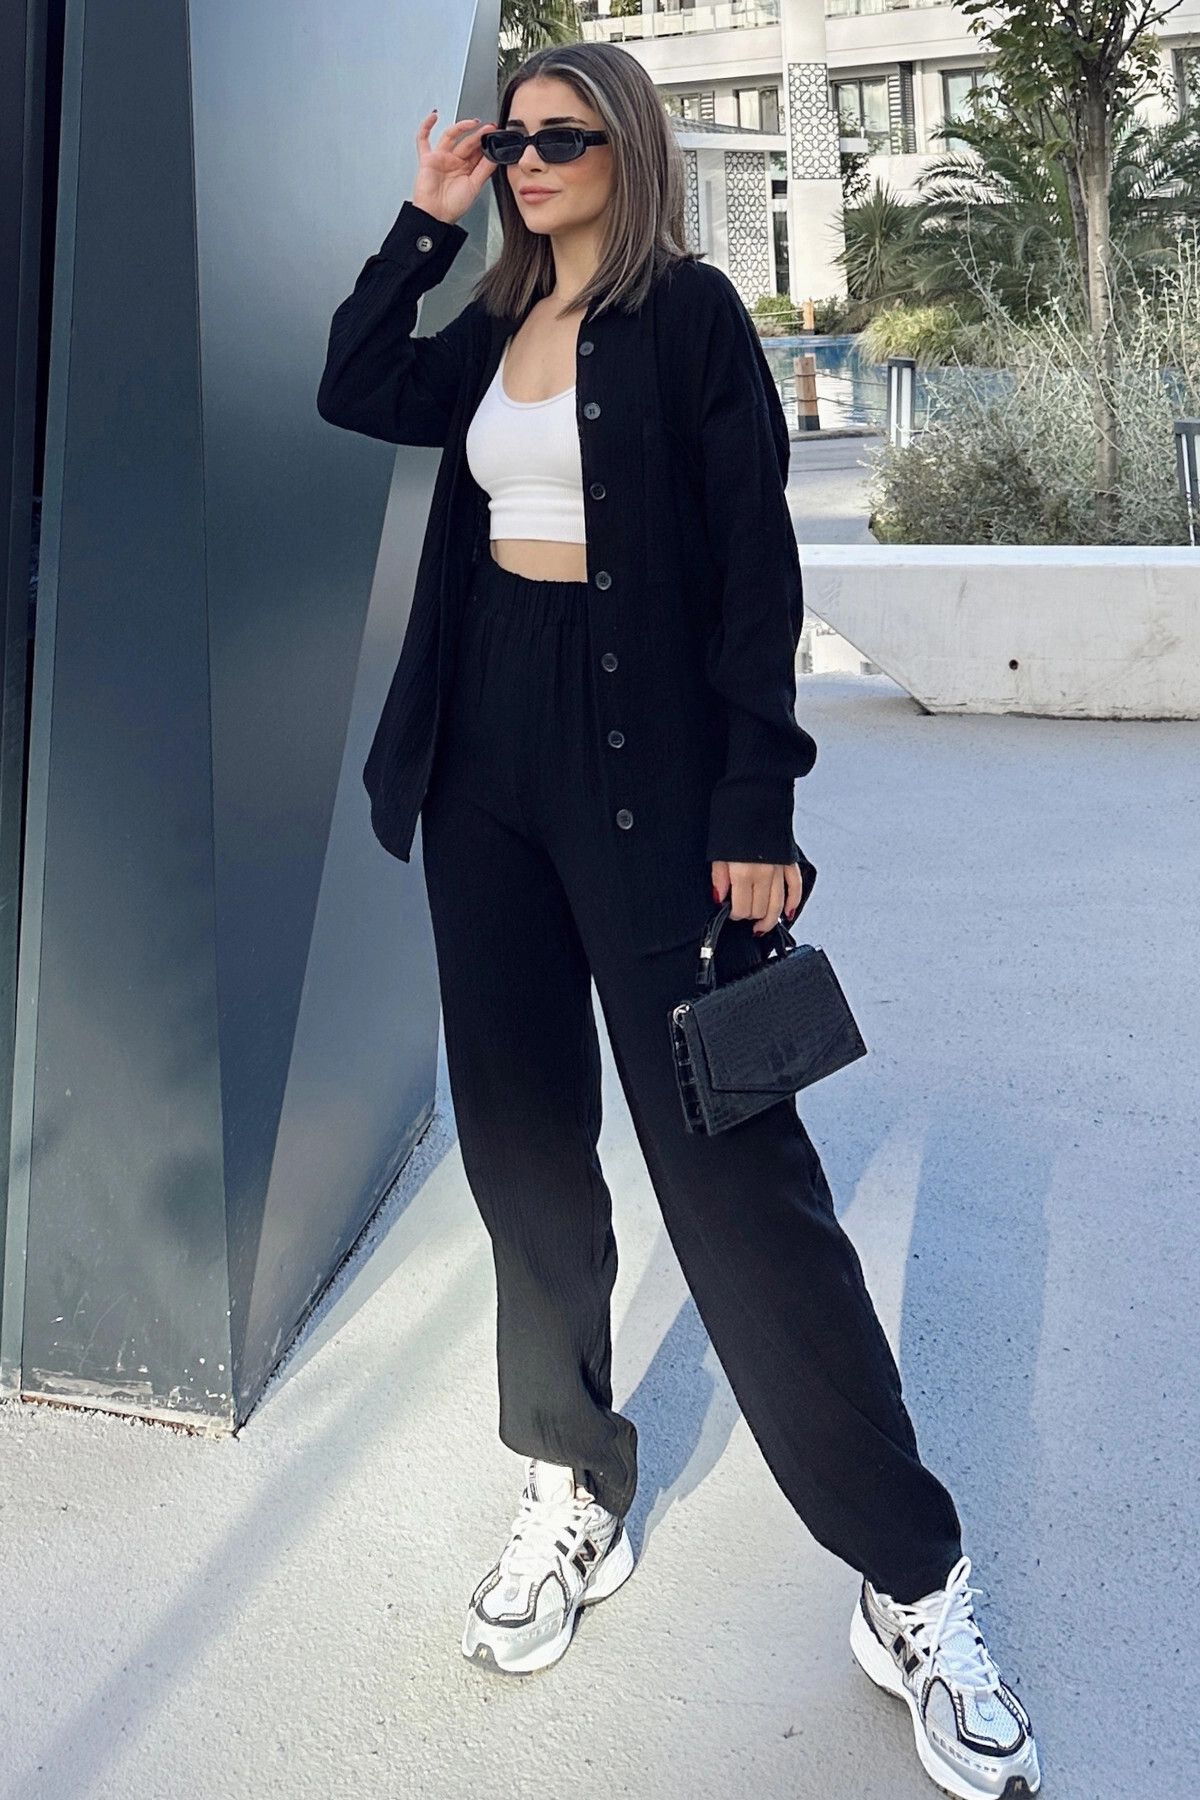 New Laviva Kadın Siyah Salaş Uzun Gömlek & Beli Lastikli Pantolon - Alt & Üst Müslin Kumaş Takım